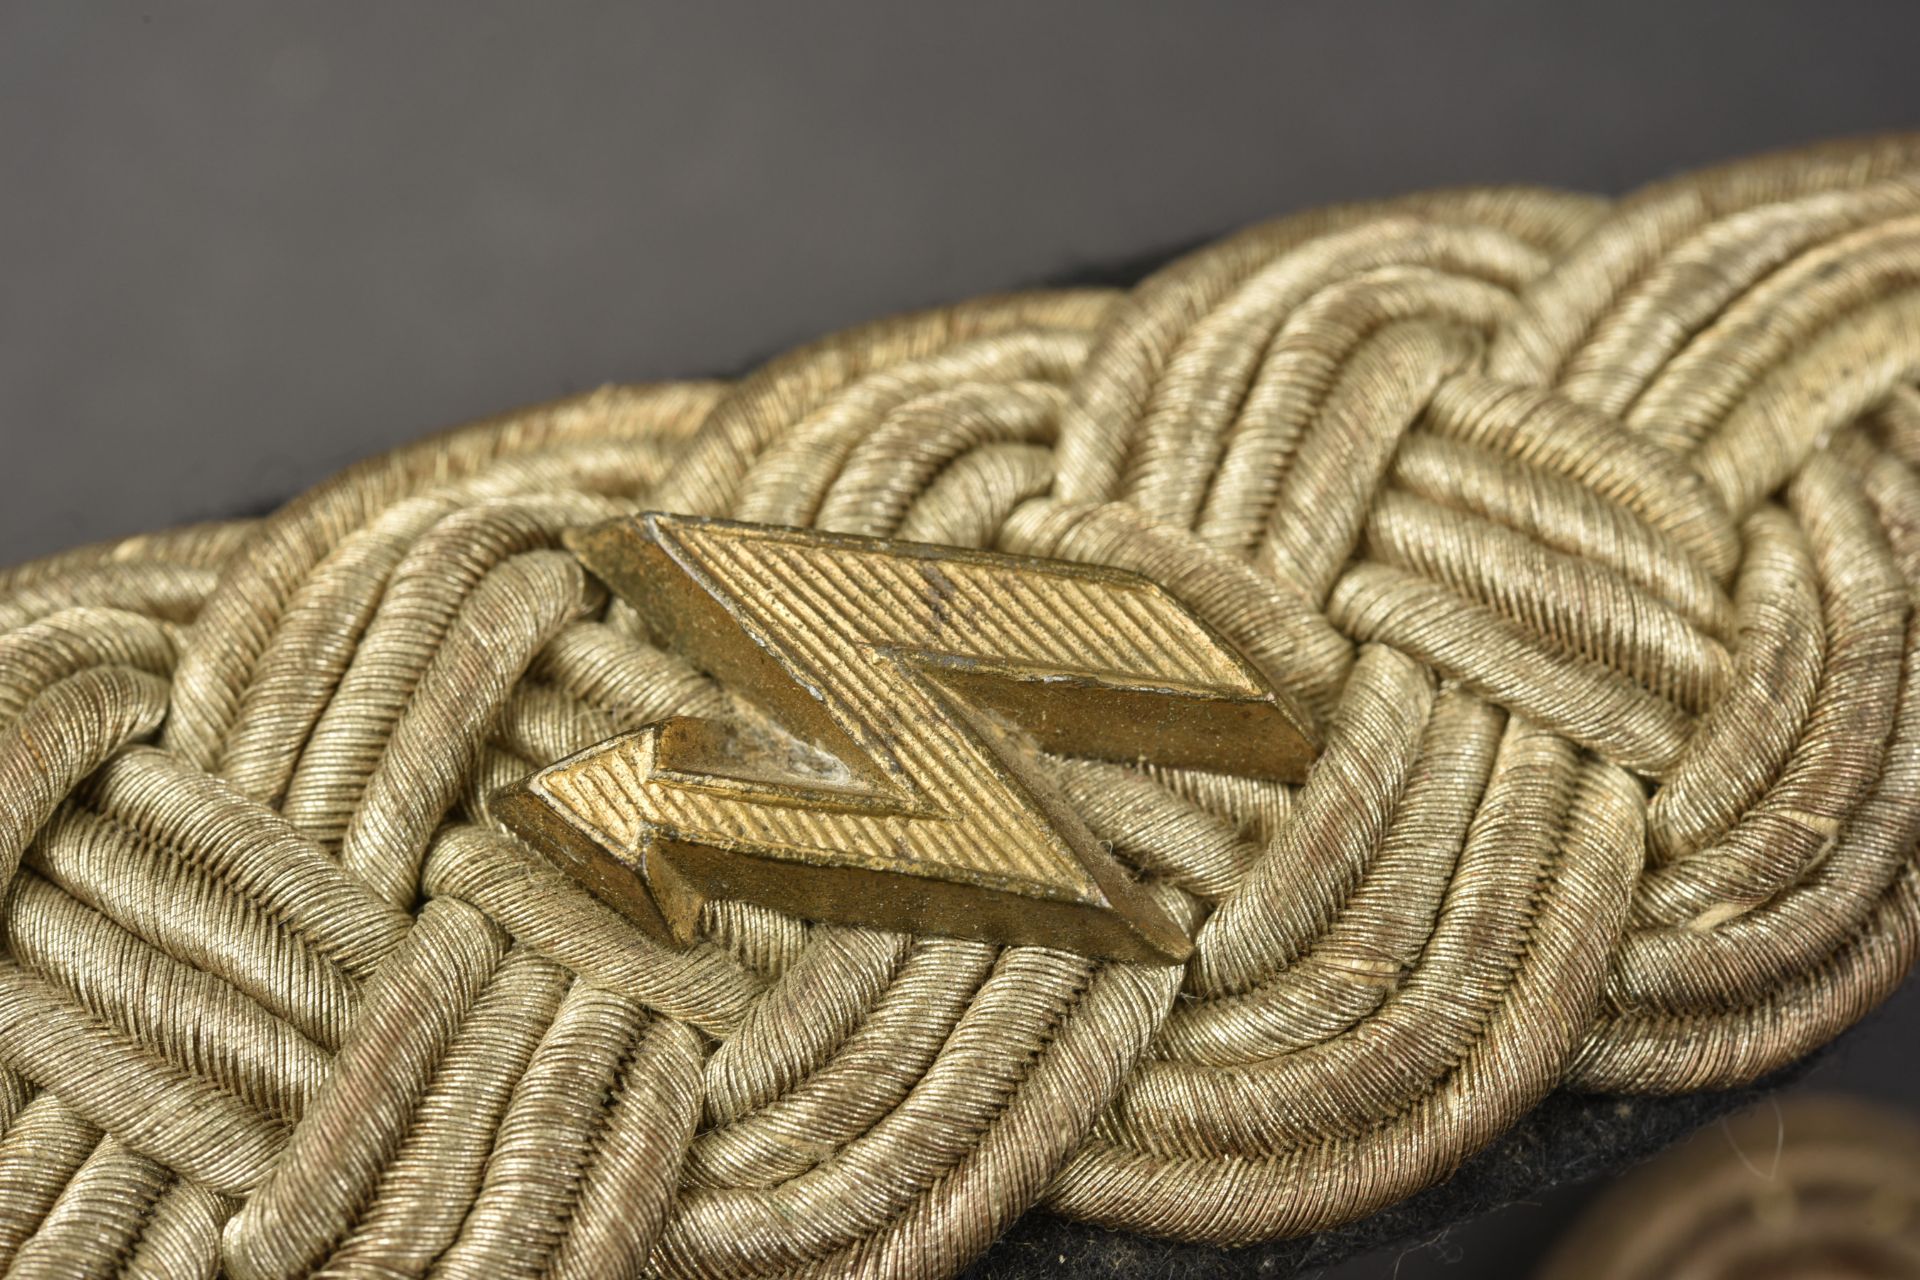 Pattes d epaule Kriegsmarine. Kriegsmarine shoulder straps. - Image 2 of 3